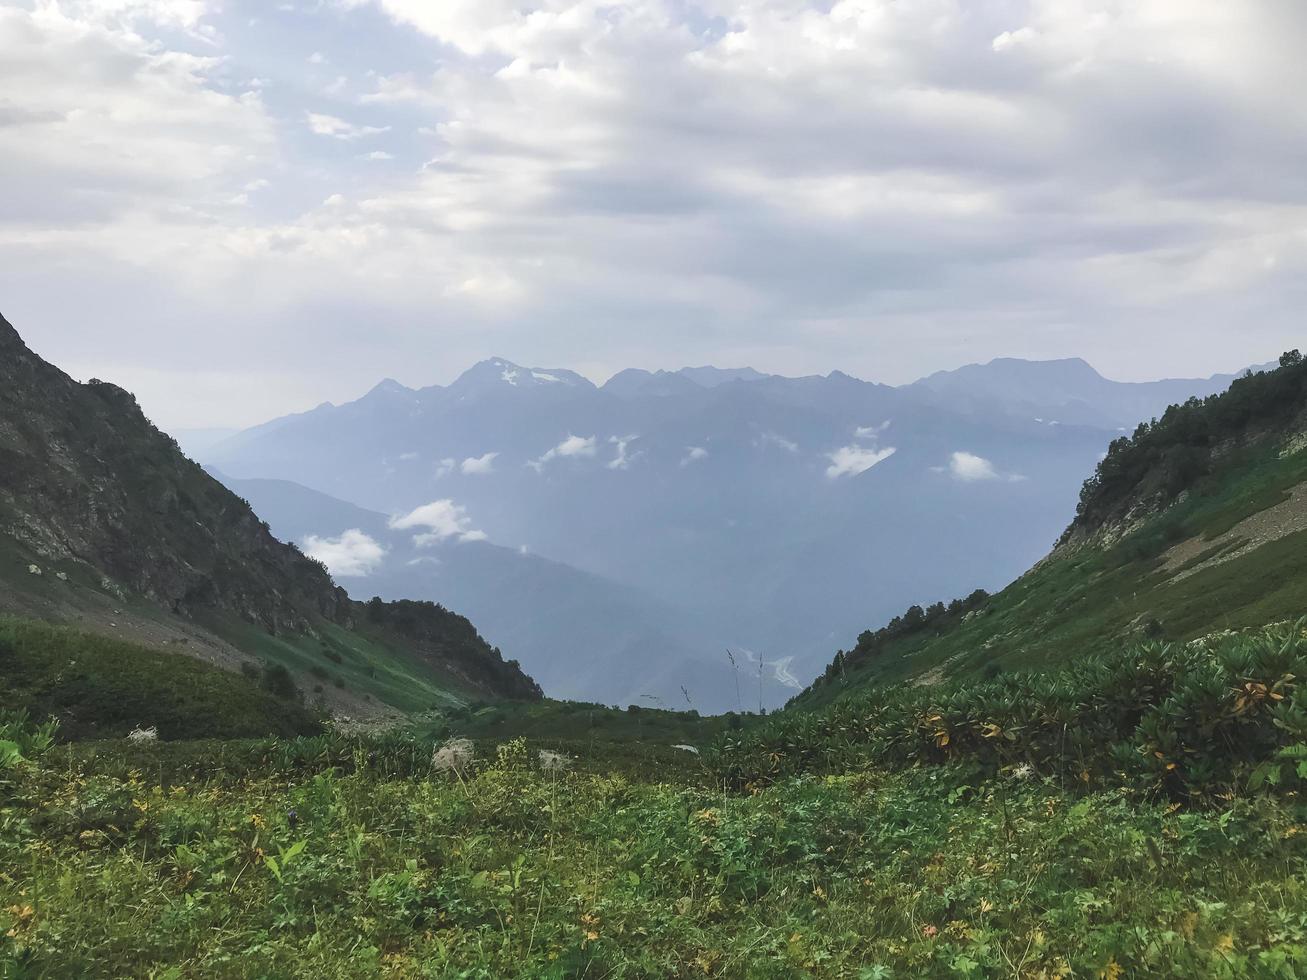 bela vista nas montanhas do Cáucaso. roza khutor, rússia foto